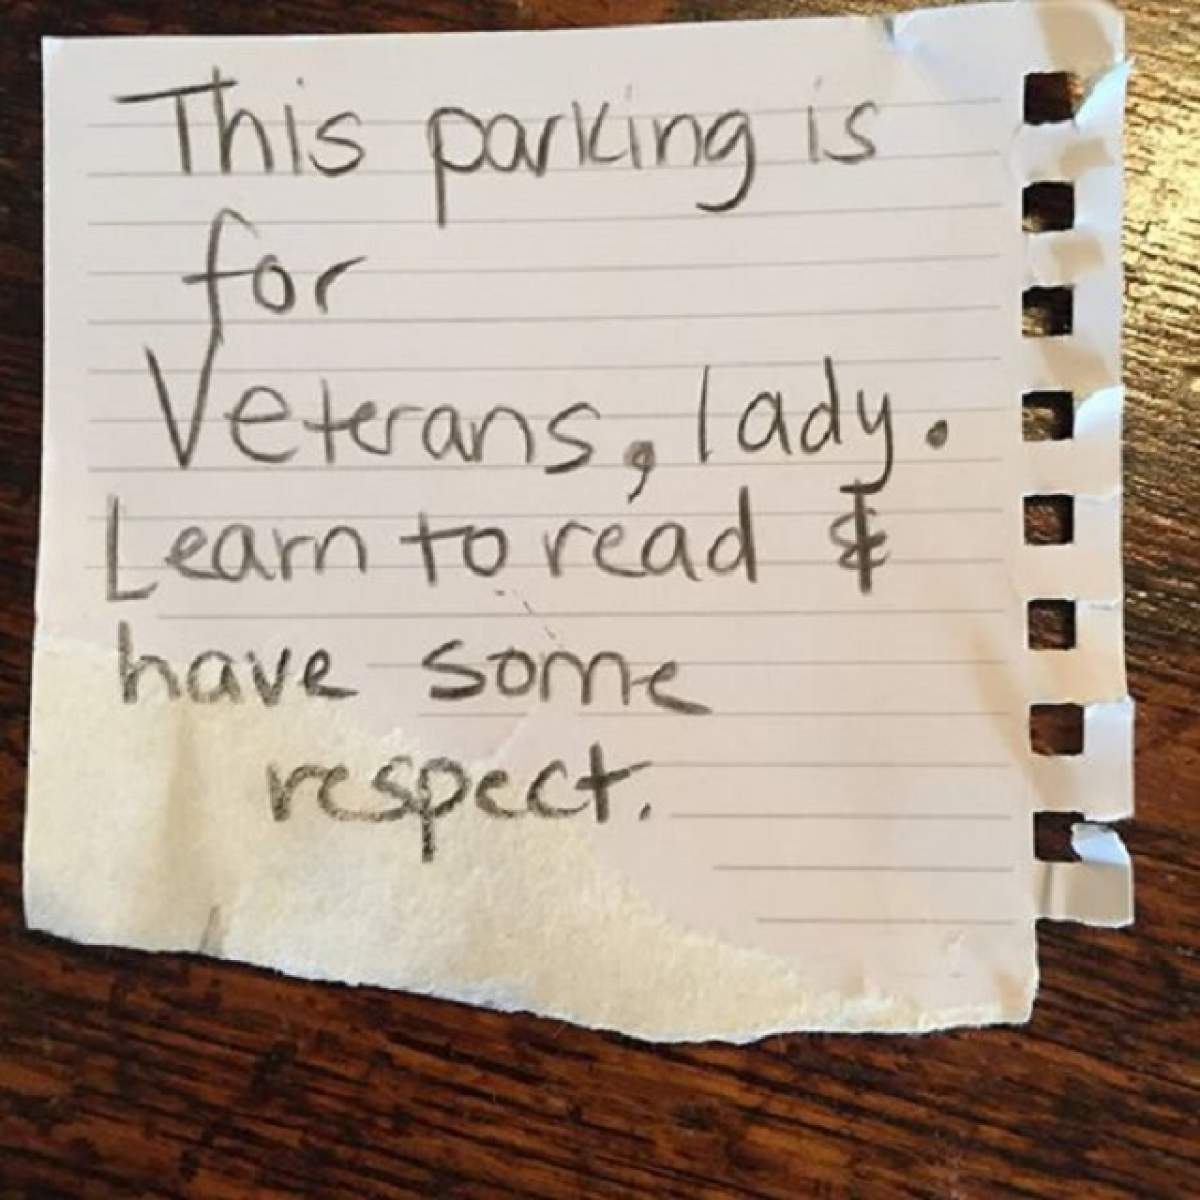 O femeie a găsit în parbriz un bilet prin care era atenţionată că a parcat pe un loc destinat veteranilor! Ce a urmat a impresionat o lume întreagă, oferind o adevărată lecţie de viaţă